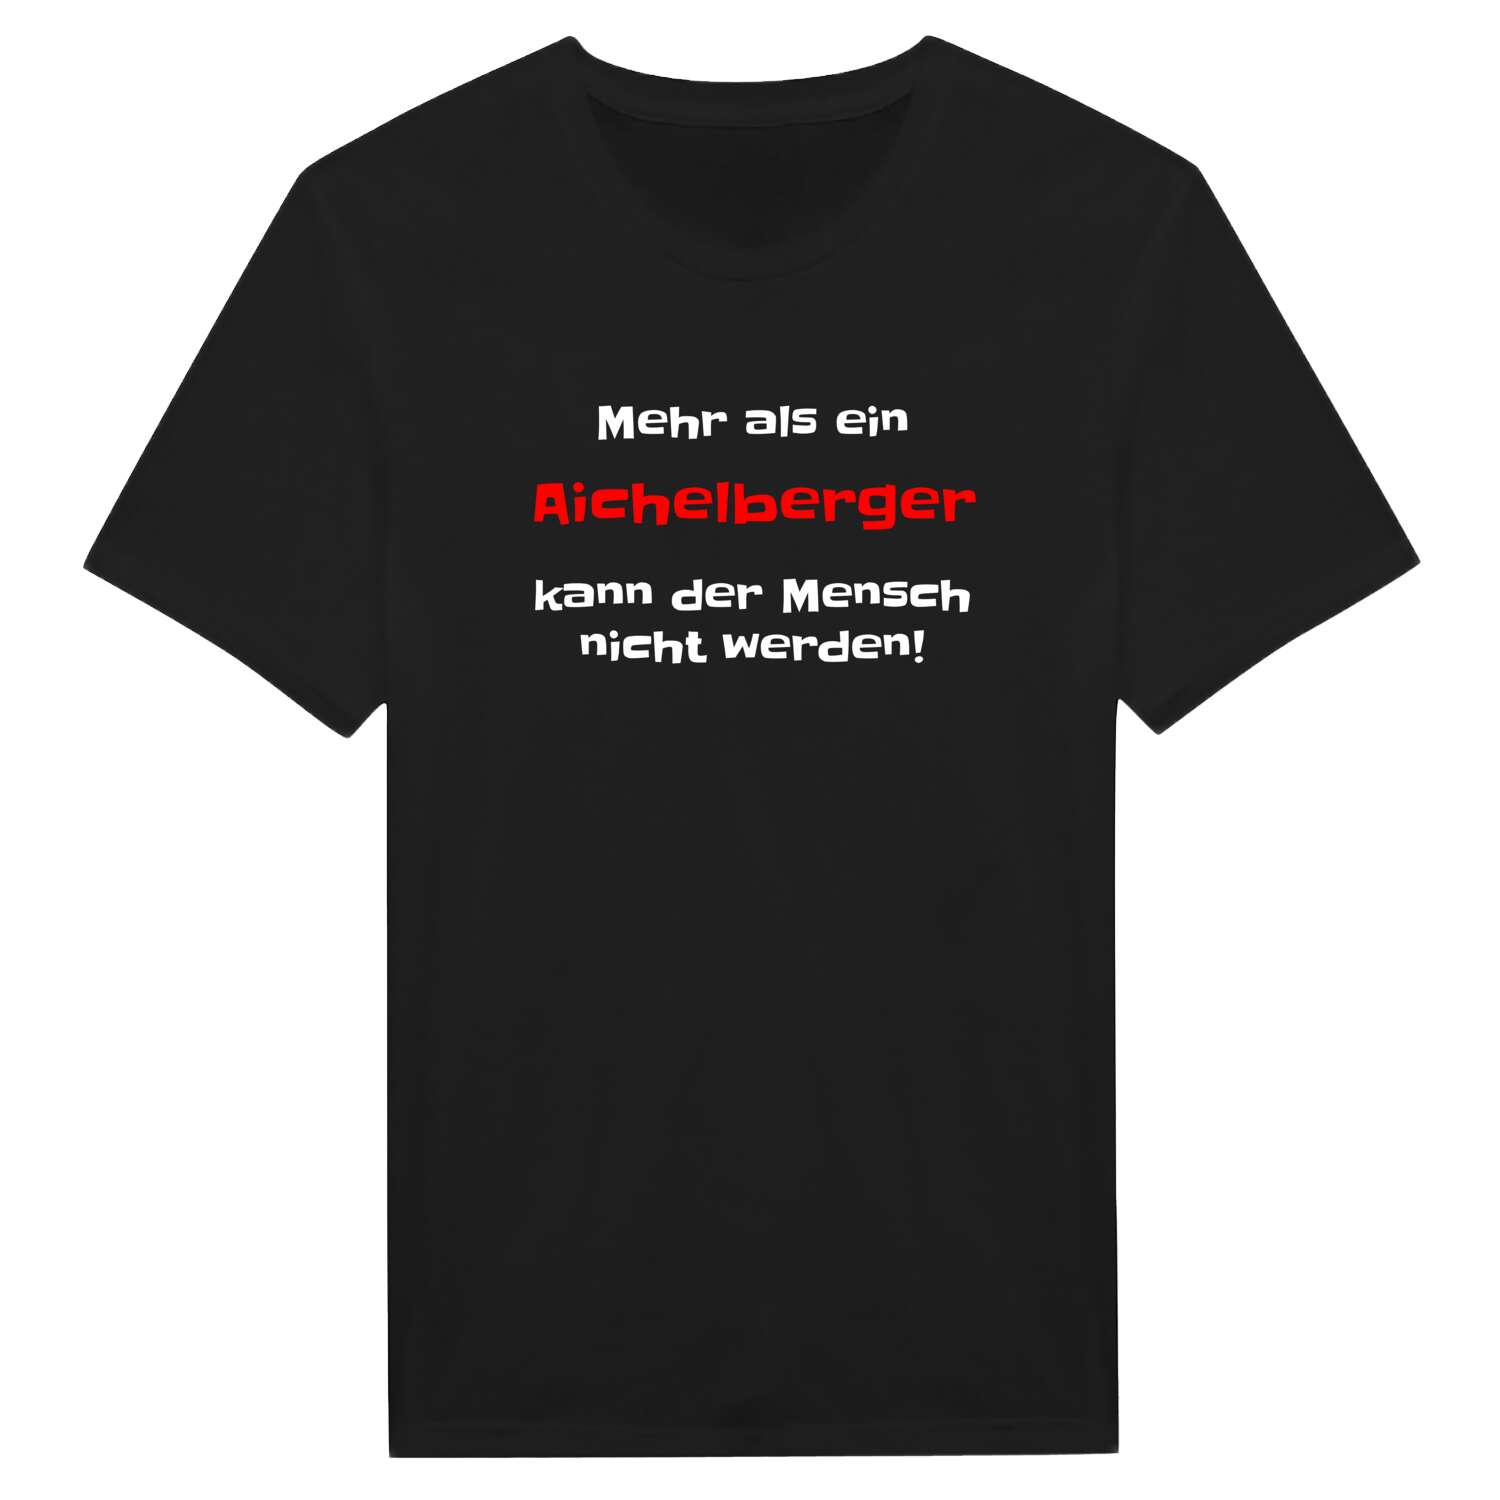 Aichelberg T-Shirt »Mehr als ein«